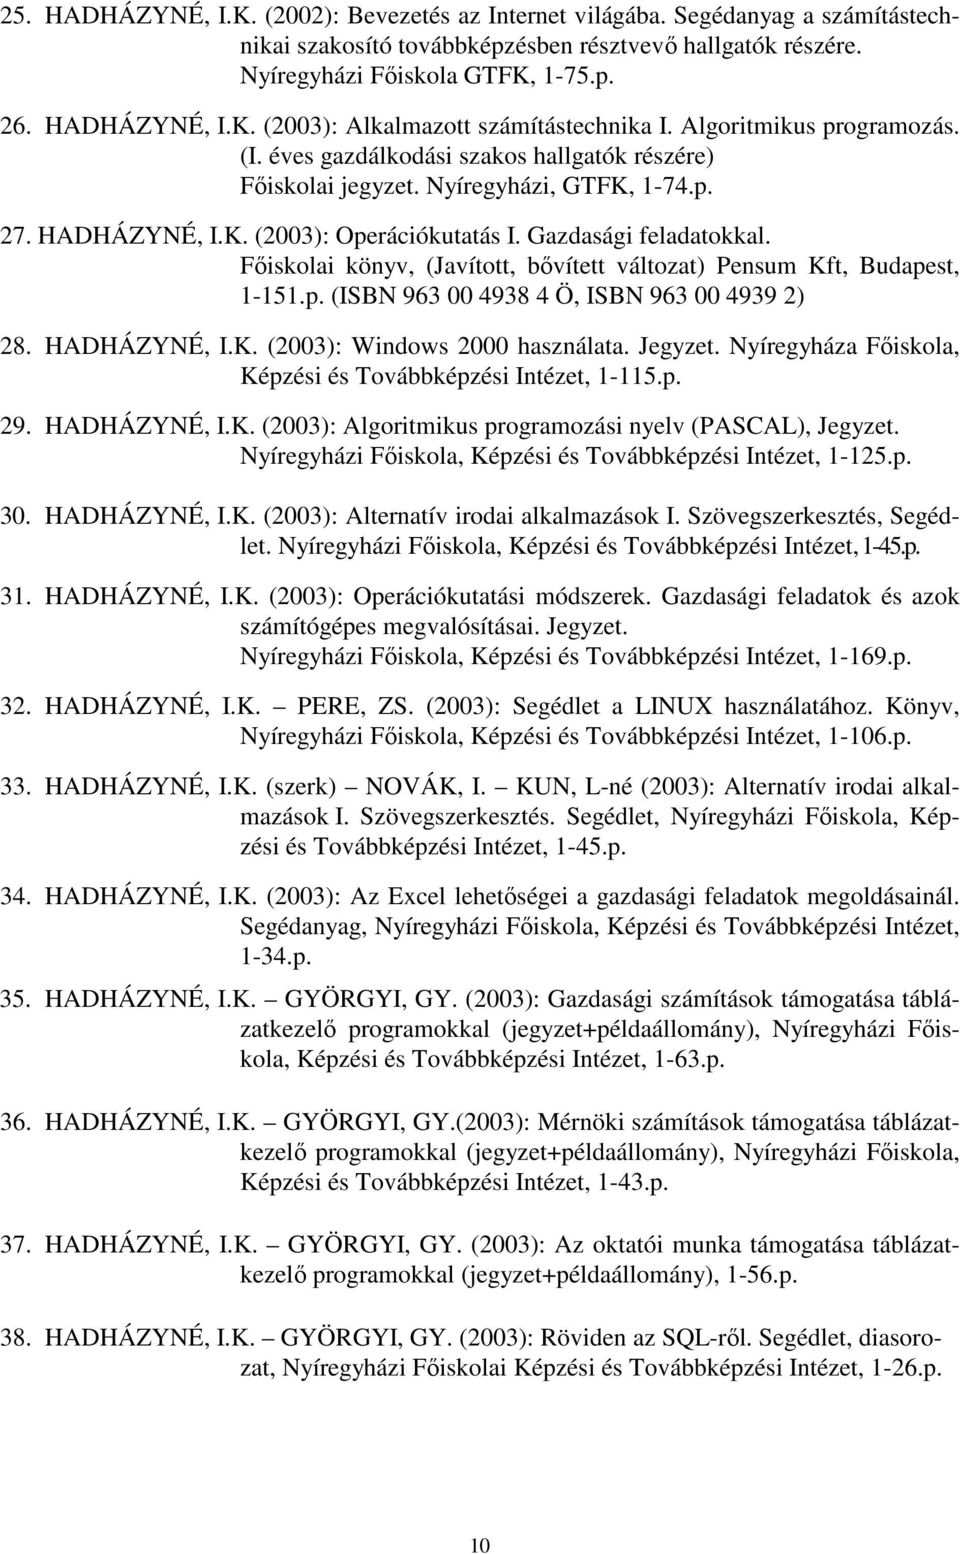 Főiskolai könyv, (Javított, bővített változat) Pensum Kft, Budapest, 1-151.p. (ISBN 963 00 4938 4 Ö, ISBN 963 00 4939 2) 28. HADHÁZYNÉ, I.K. (2003): Windows 2000 használata. Jegyzet.